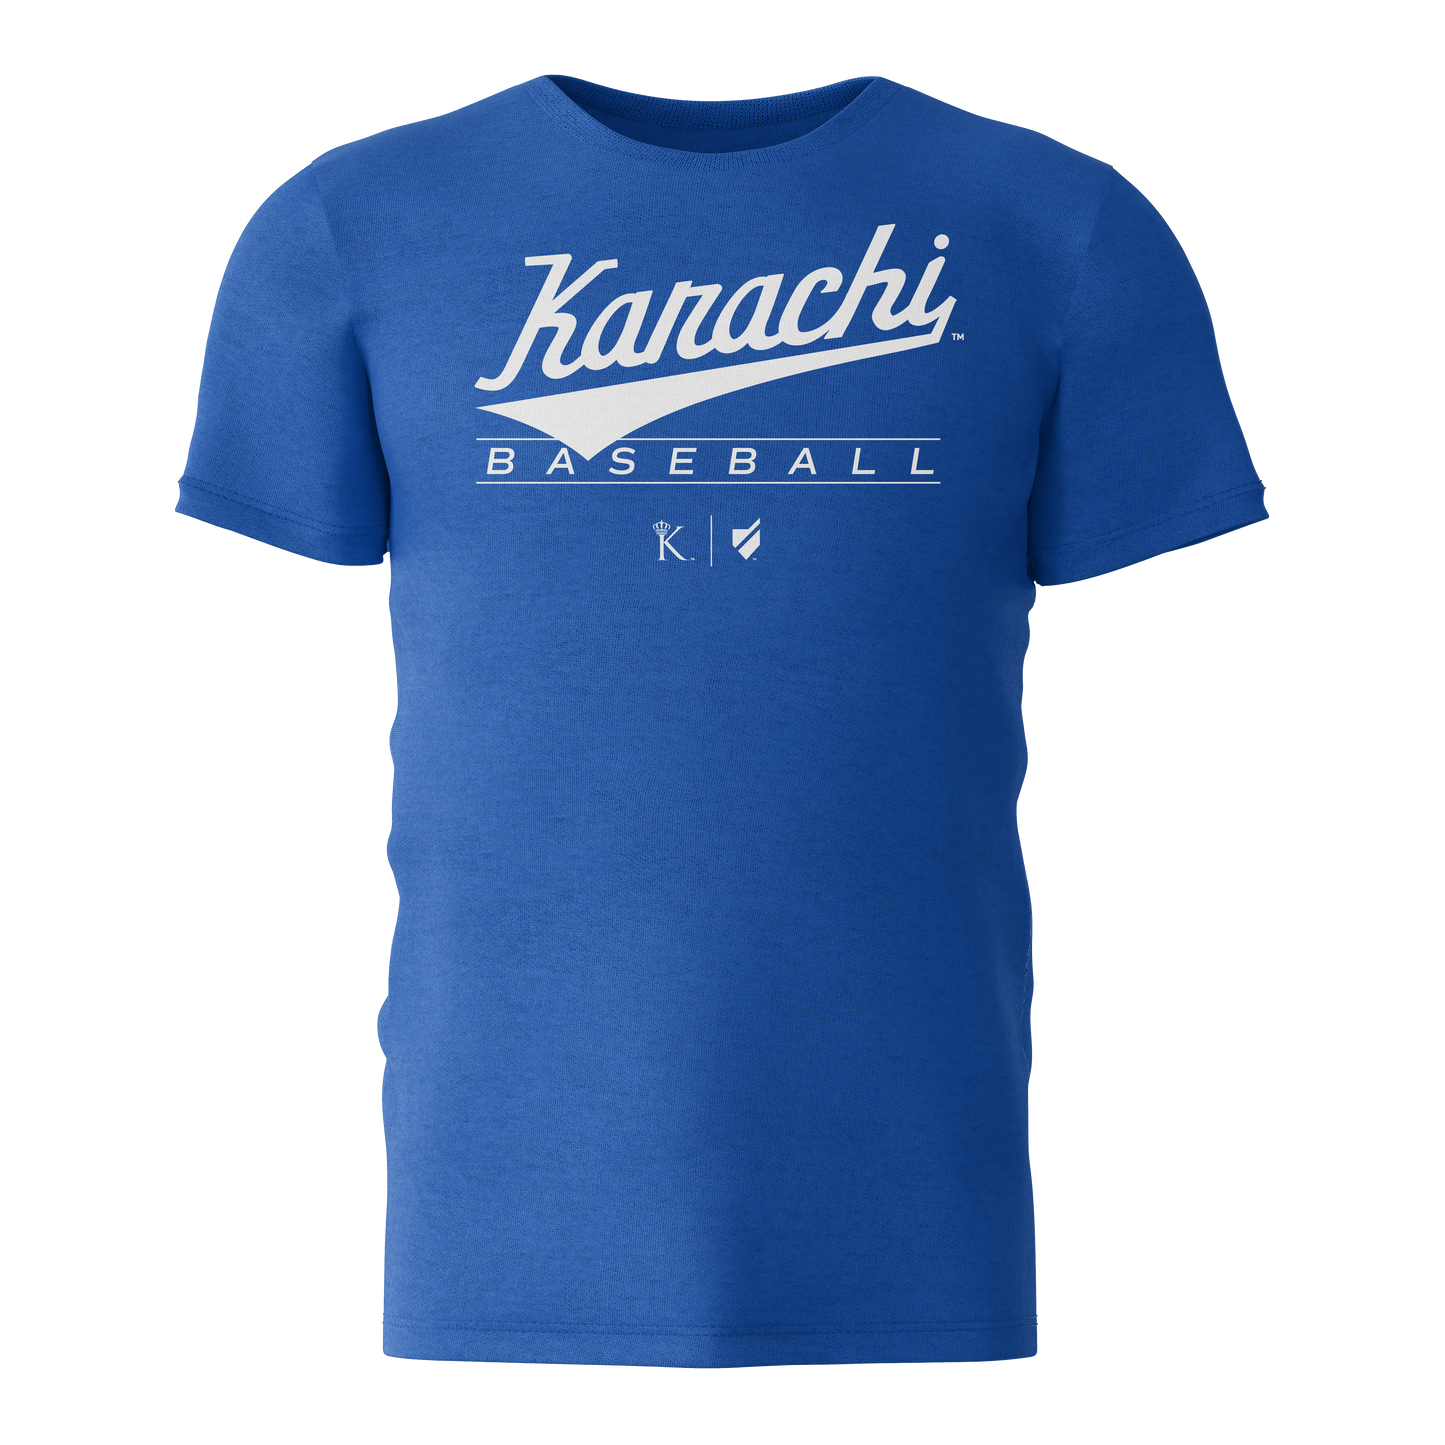 Official Karachi Team T-Shirt